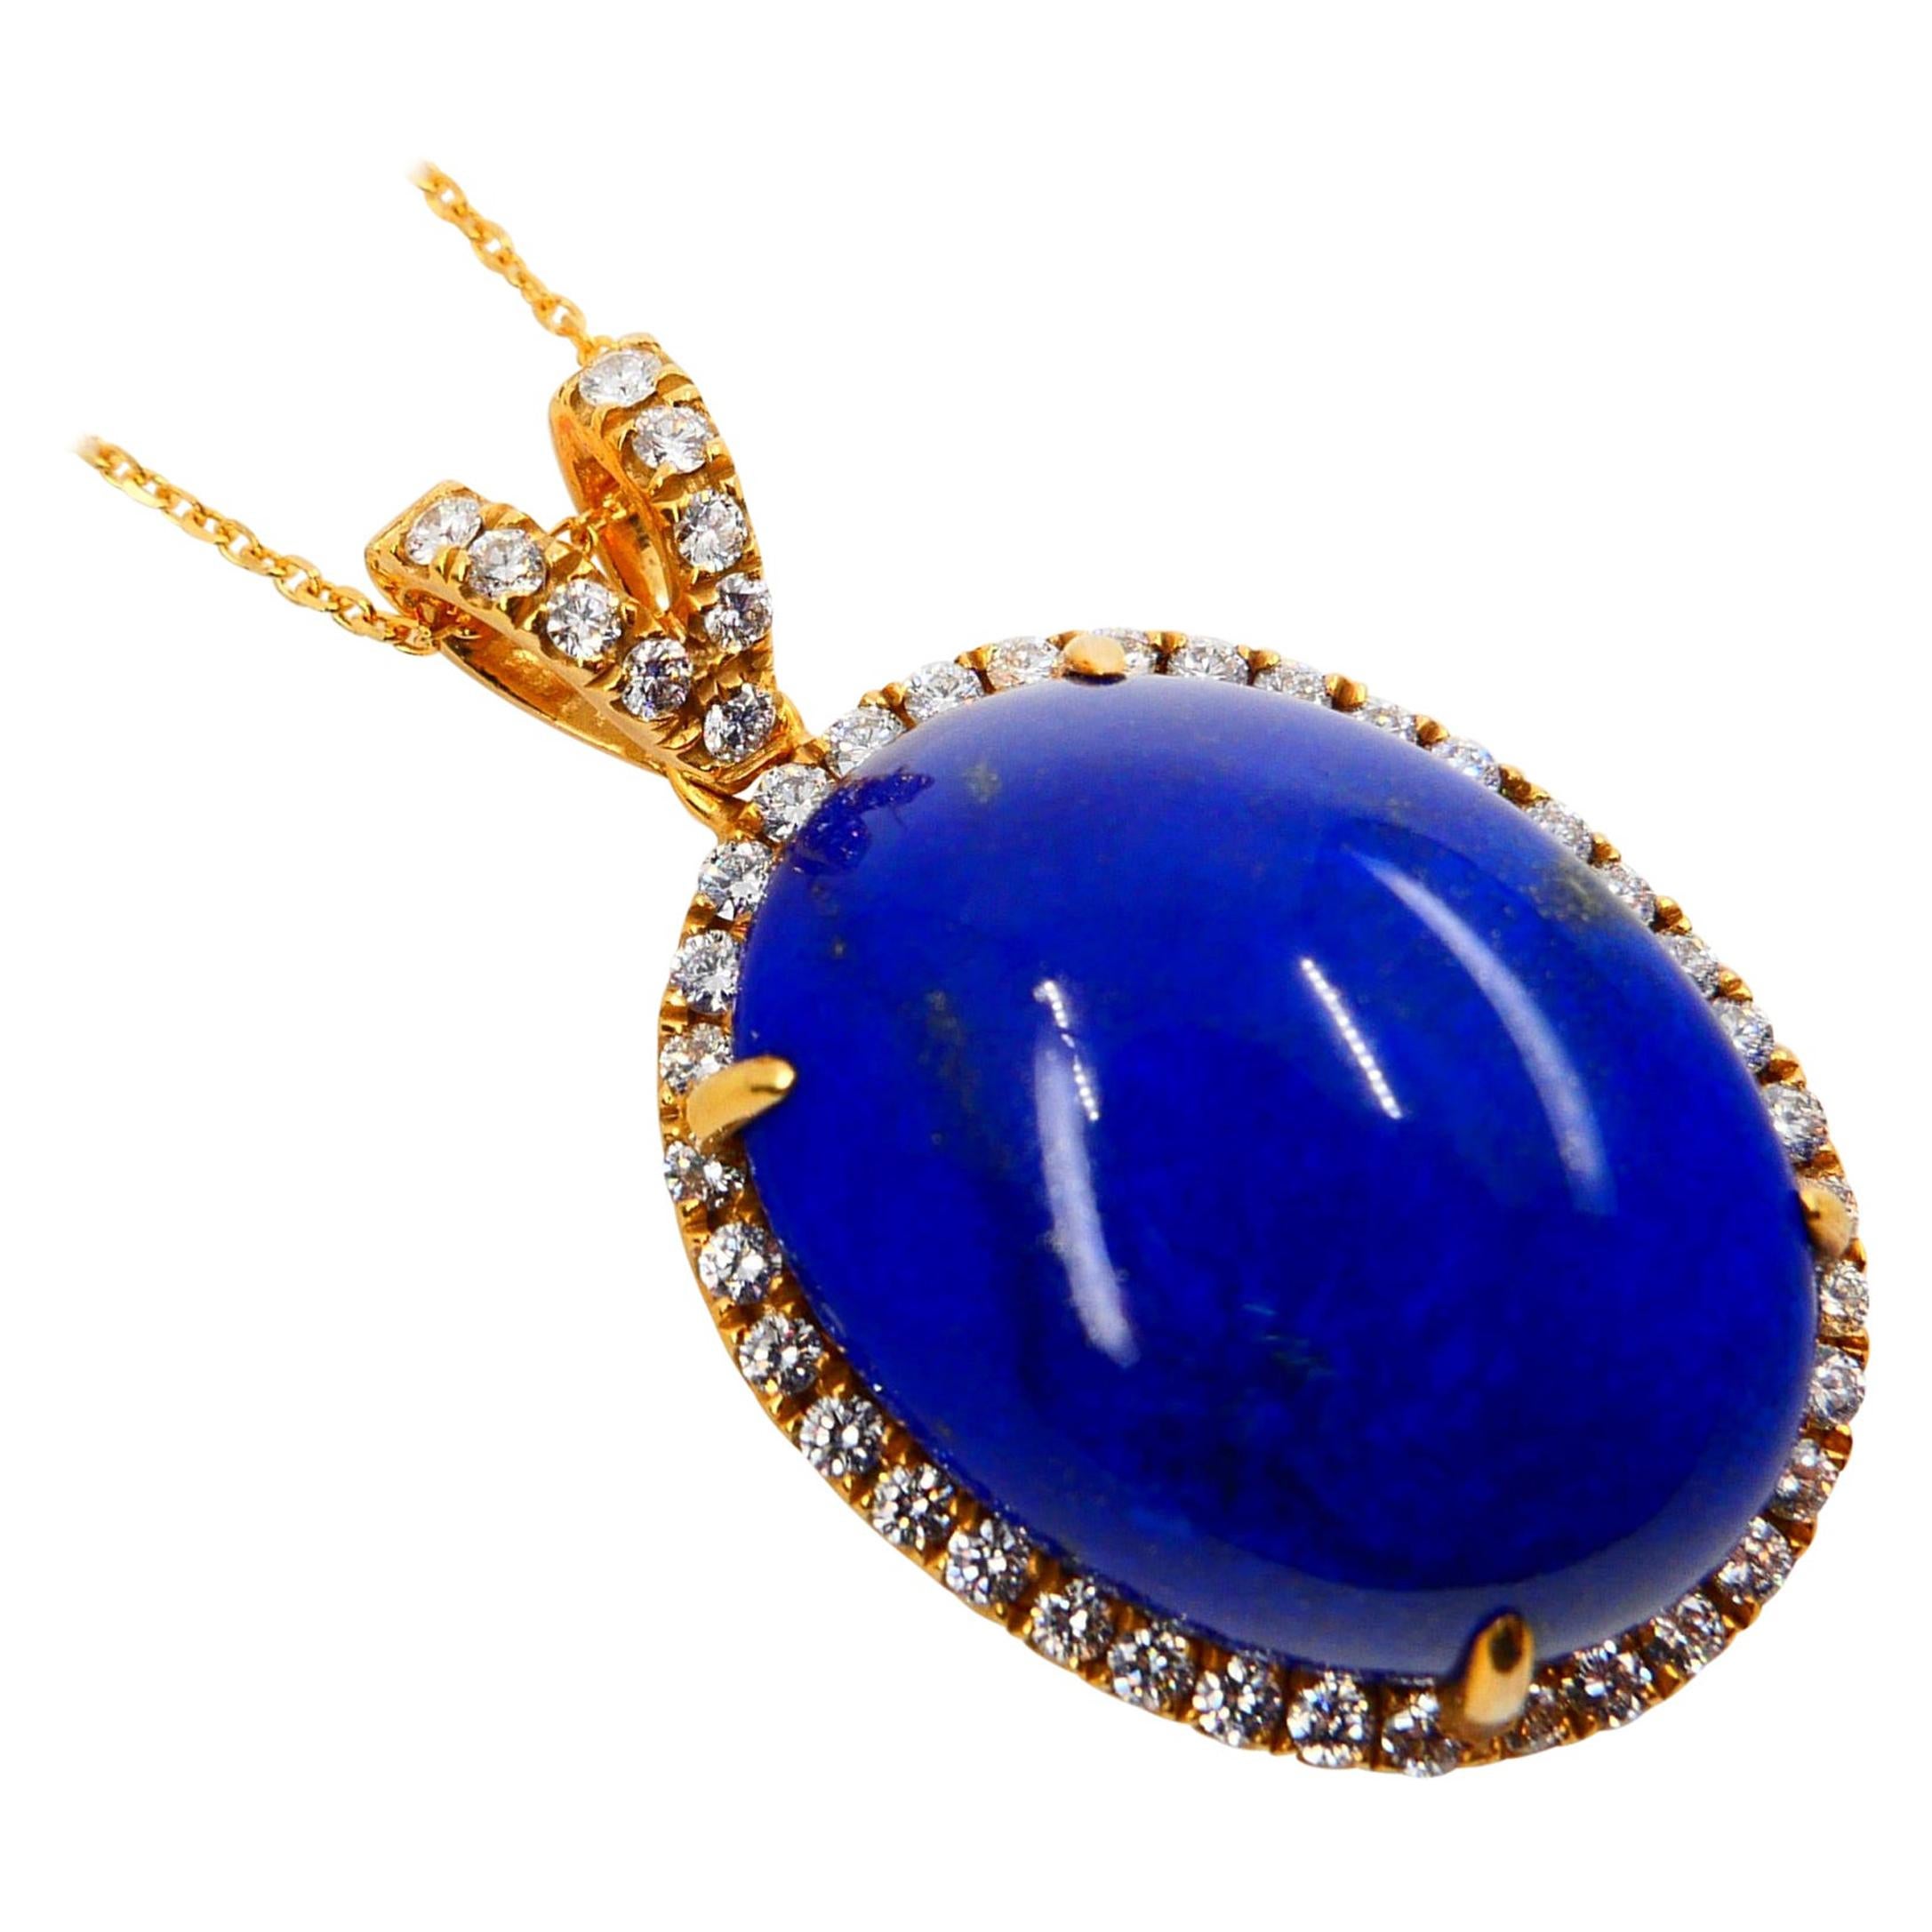 Royal Blue Lapis Lazuli & Diamond Pendant Drop Necklace, Gold Veins & Gold Spots